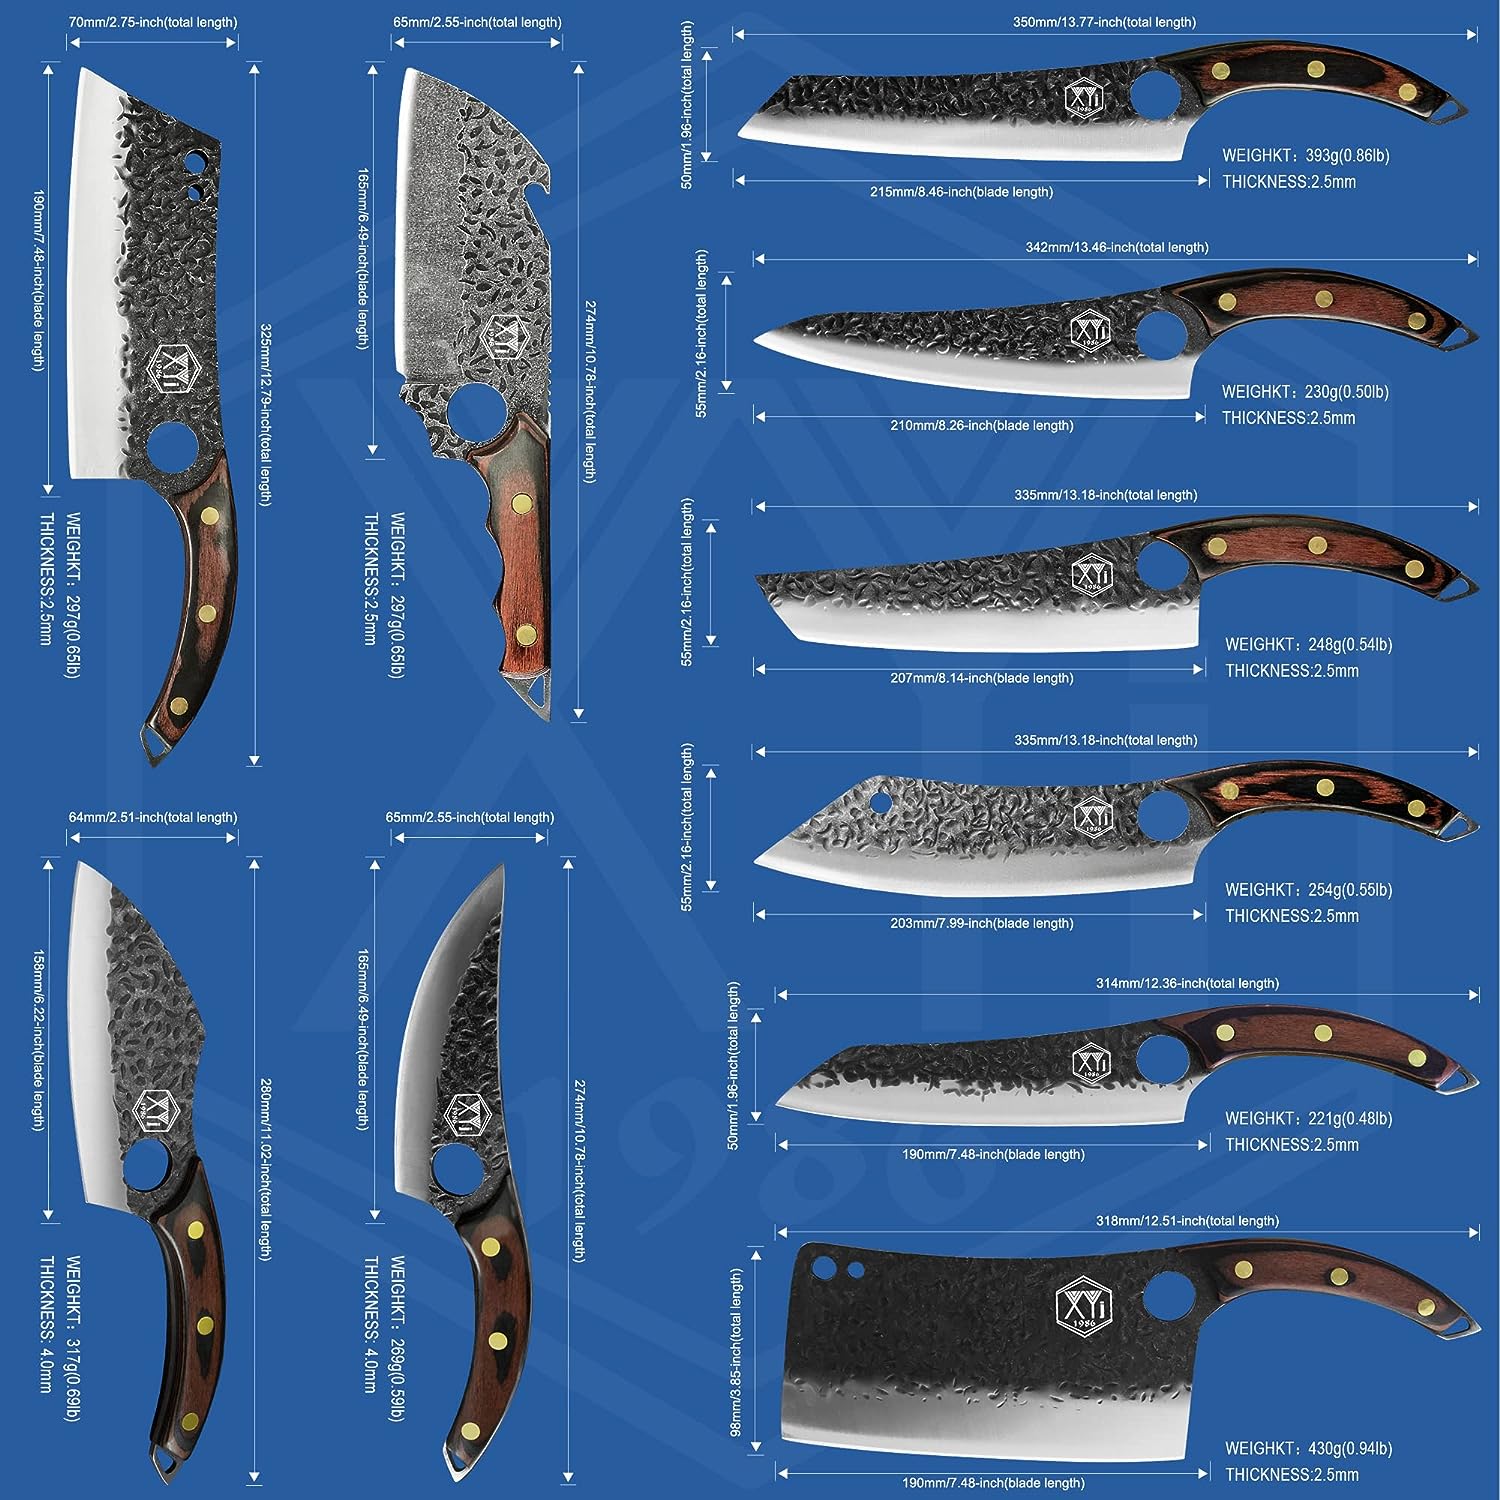 I migliori coltelli da macellaio professionali, coltello, macellaio, lama, XYJ 1986 Set di coltelli da da macellaio 10 pezzi, Amazon